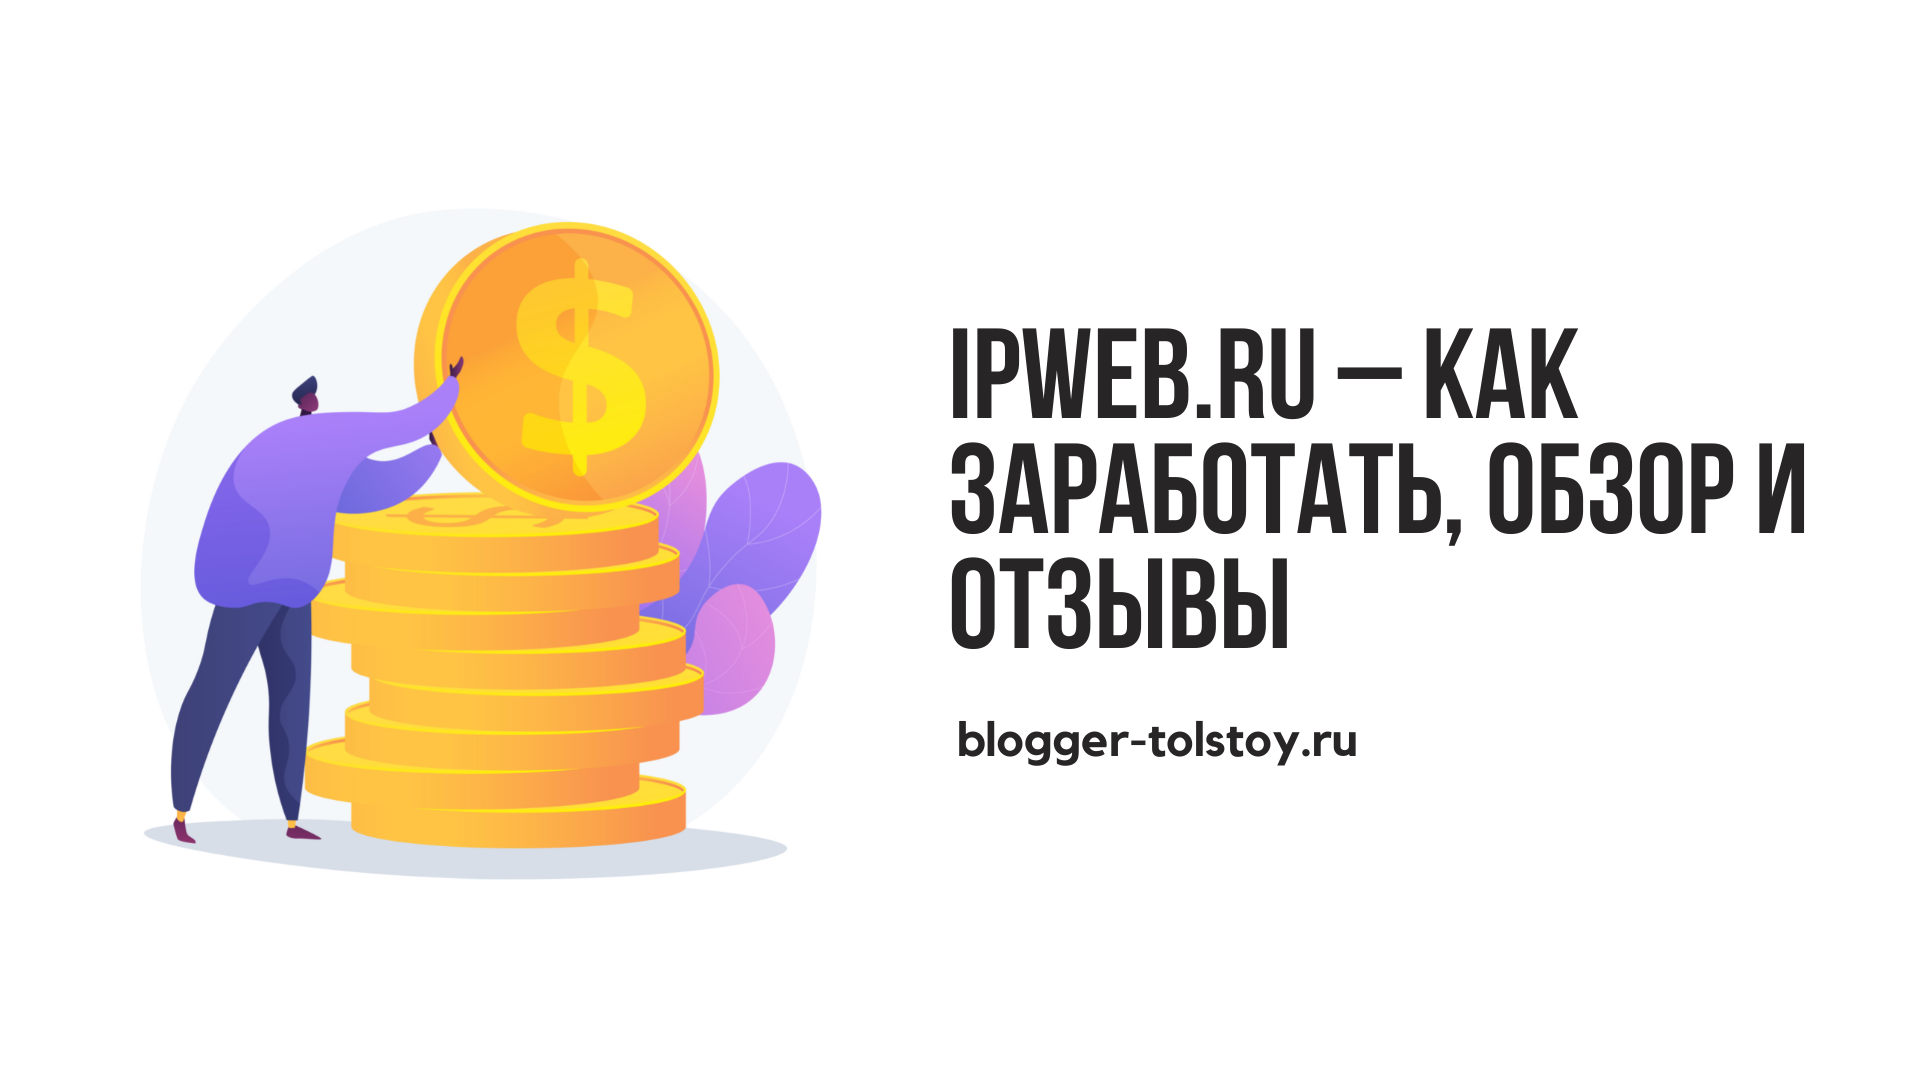 Превью к статье о IPweb.ru